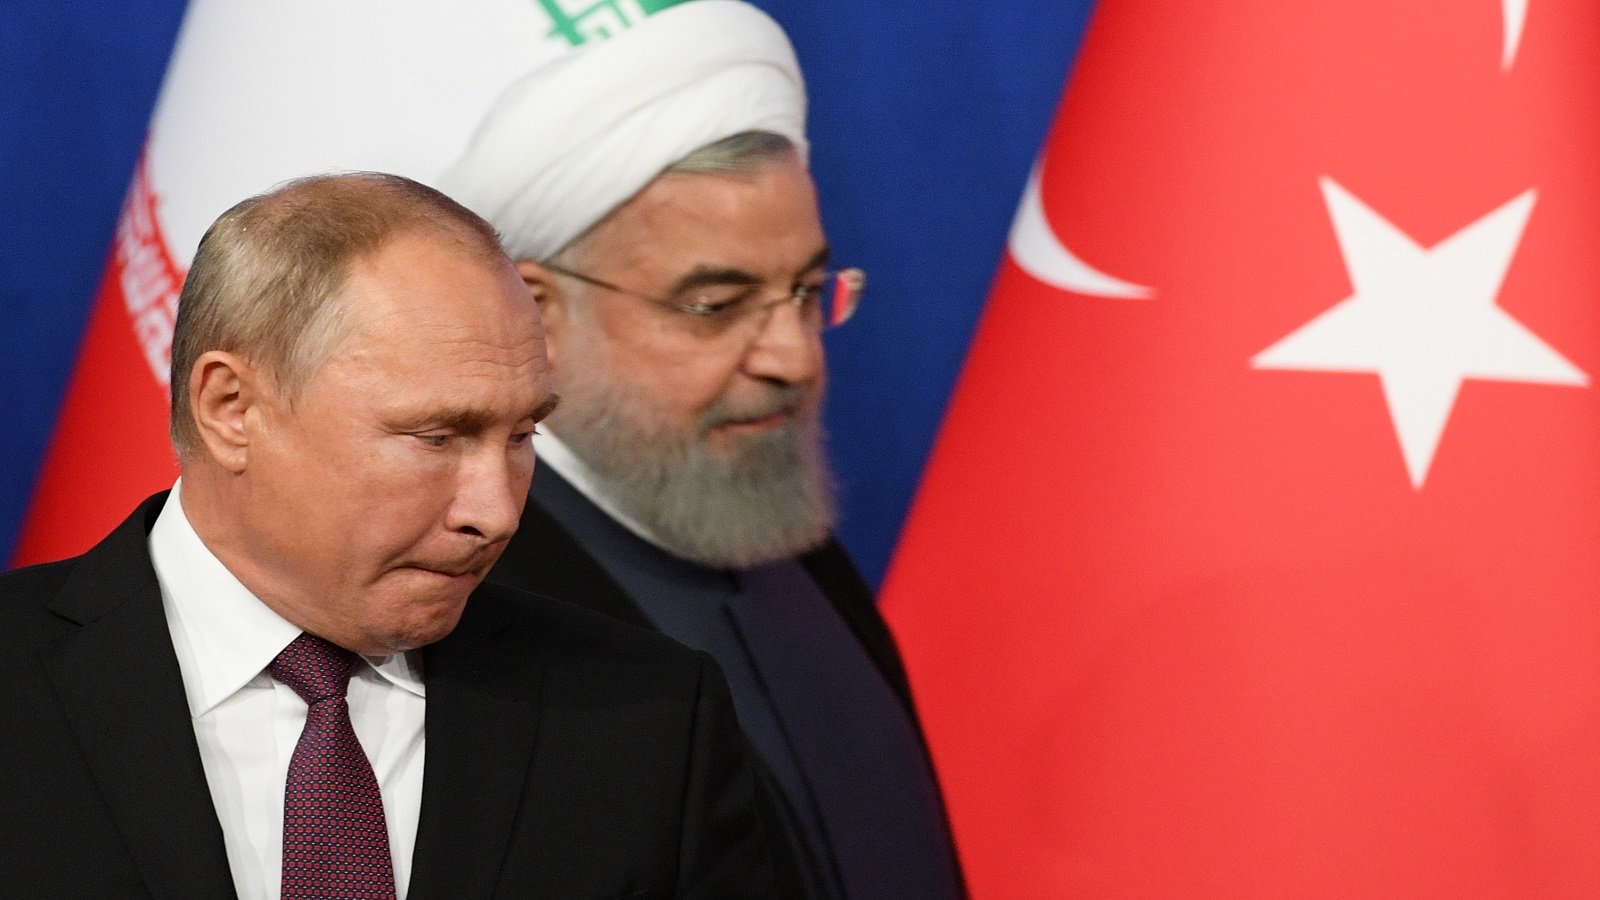 الصراع النفطي الإيراني الروسي: خطأ واحد وتشتعل المنطقة